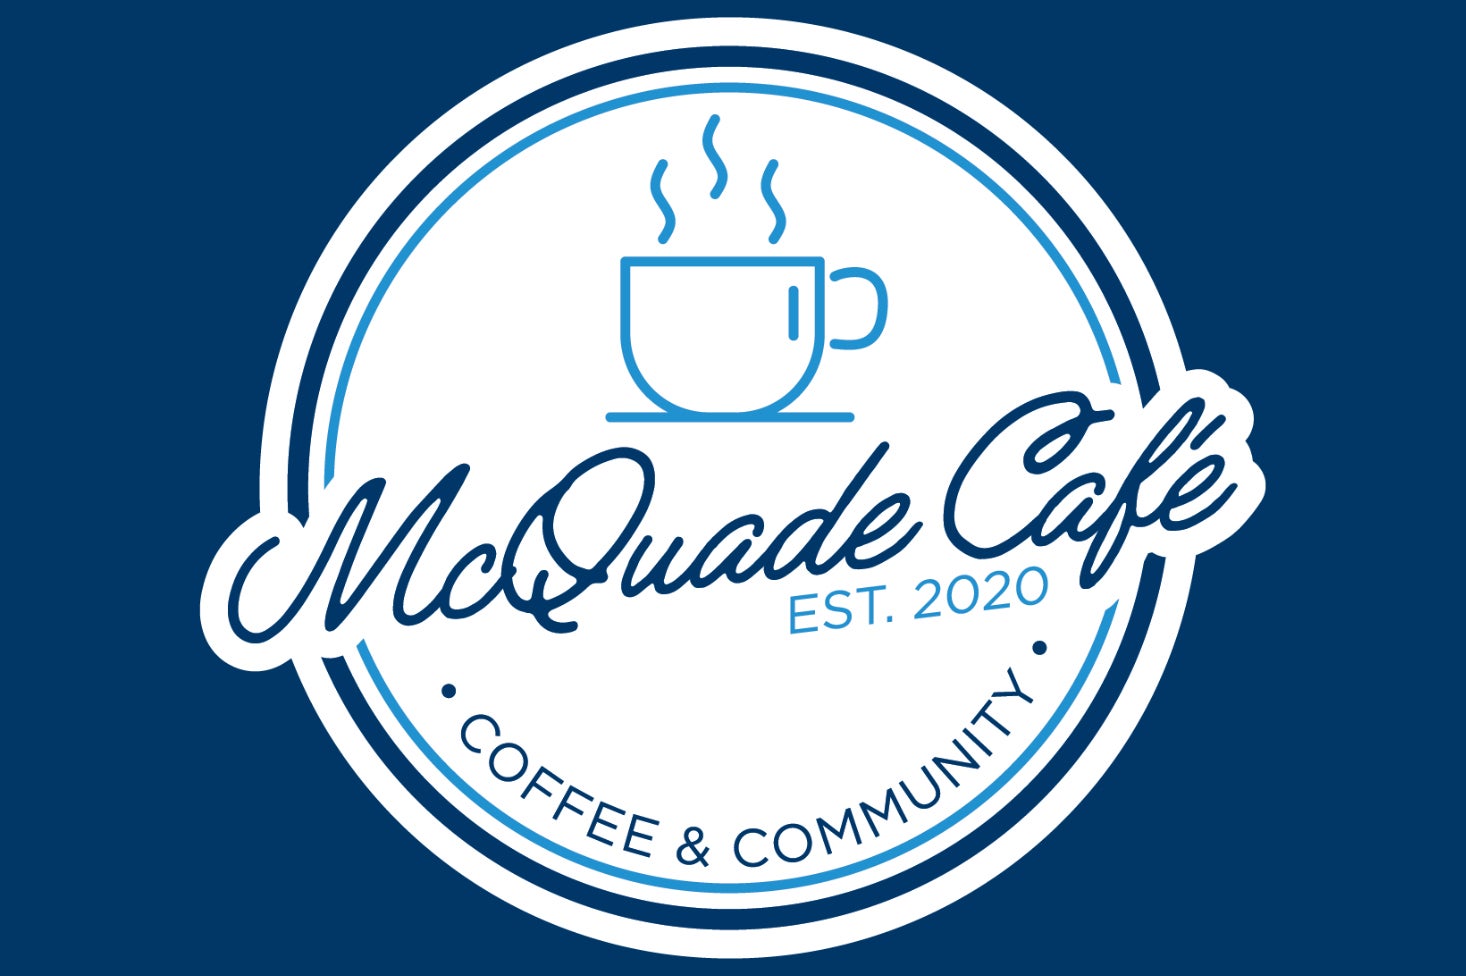 McQuade Cafe